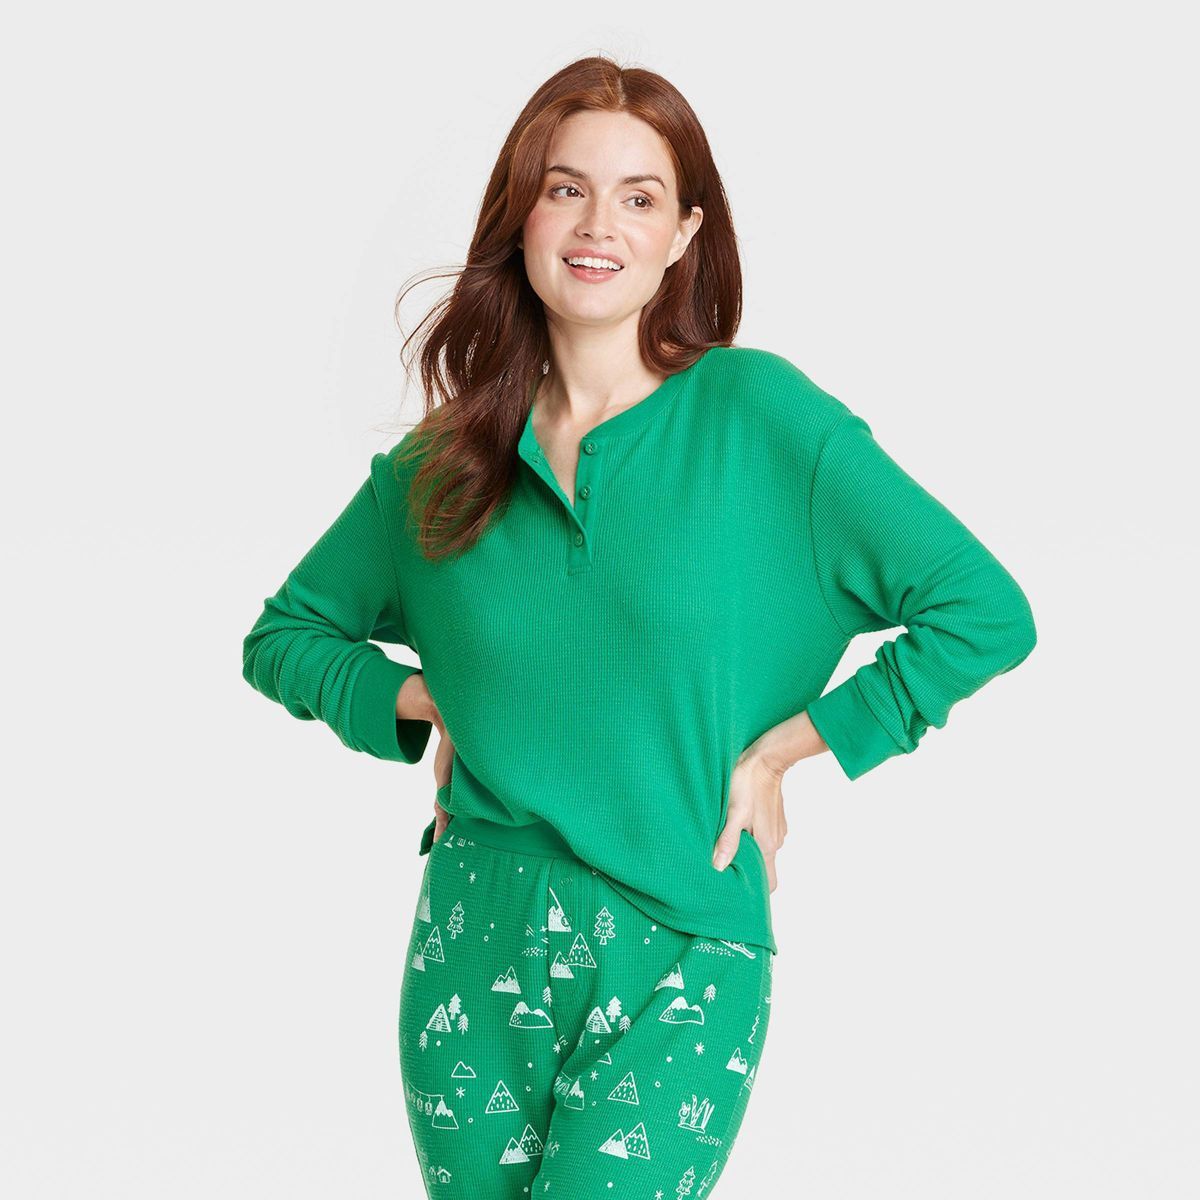 Women's Matching Family Thermal Pajama Top - Wondershop™ Green | Target